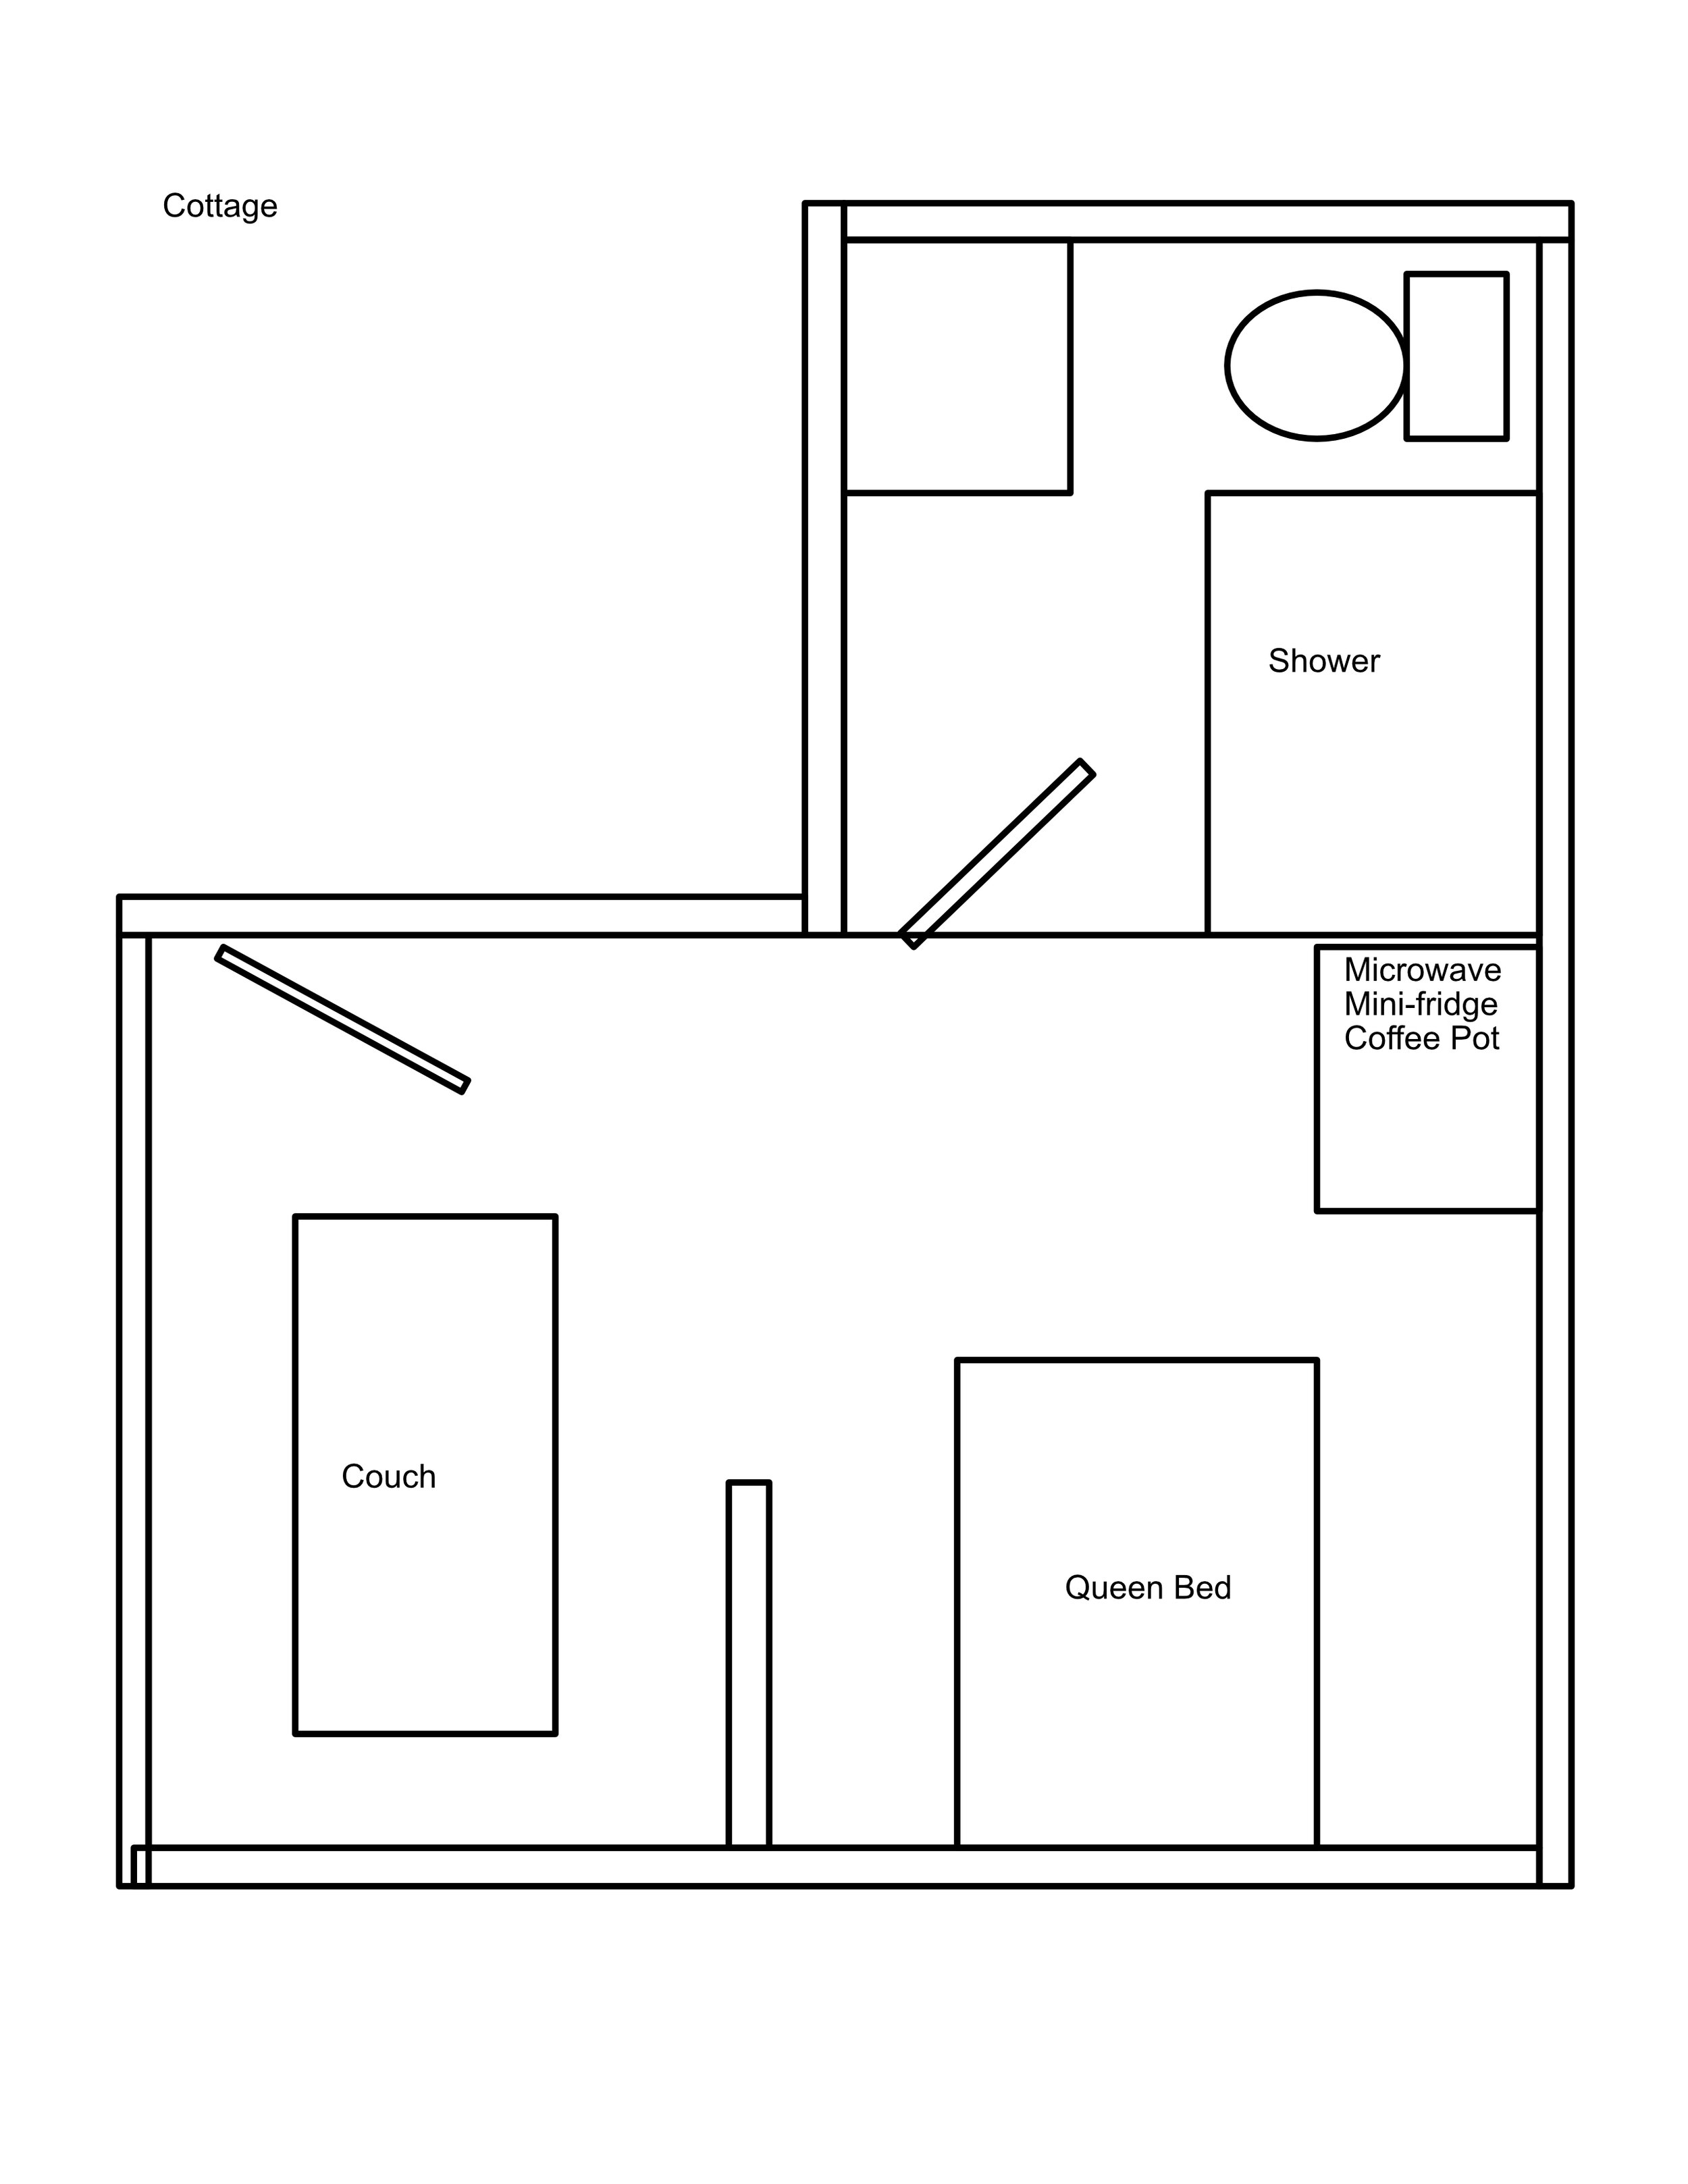 Cottage Floorplan.jpg